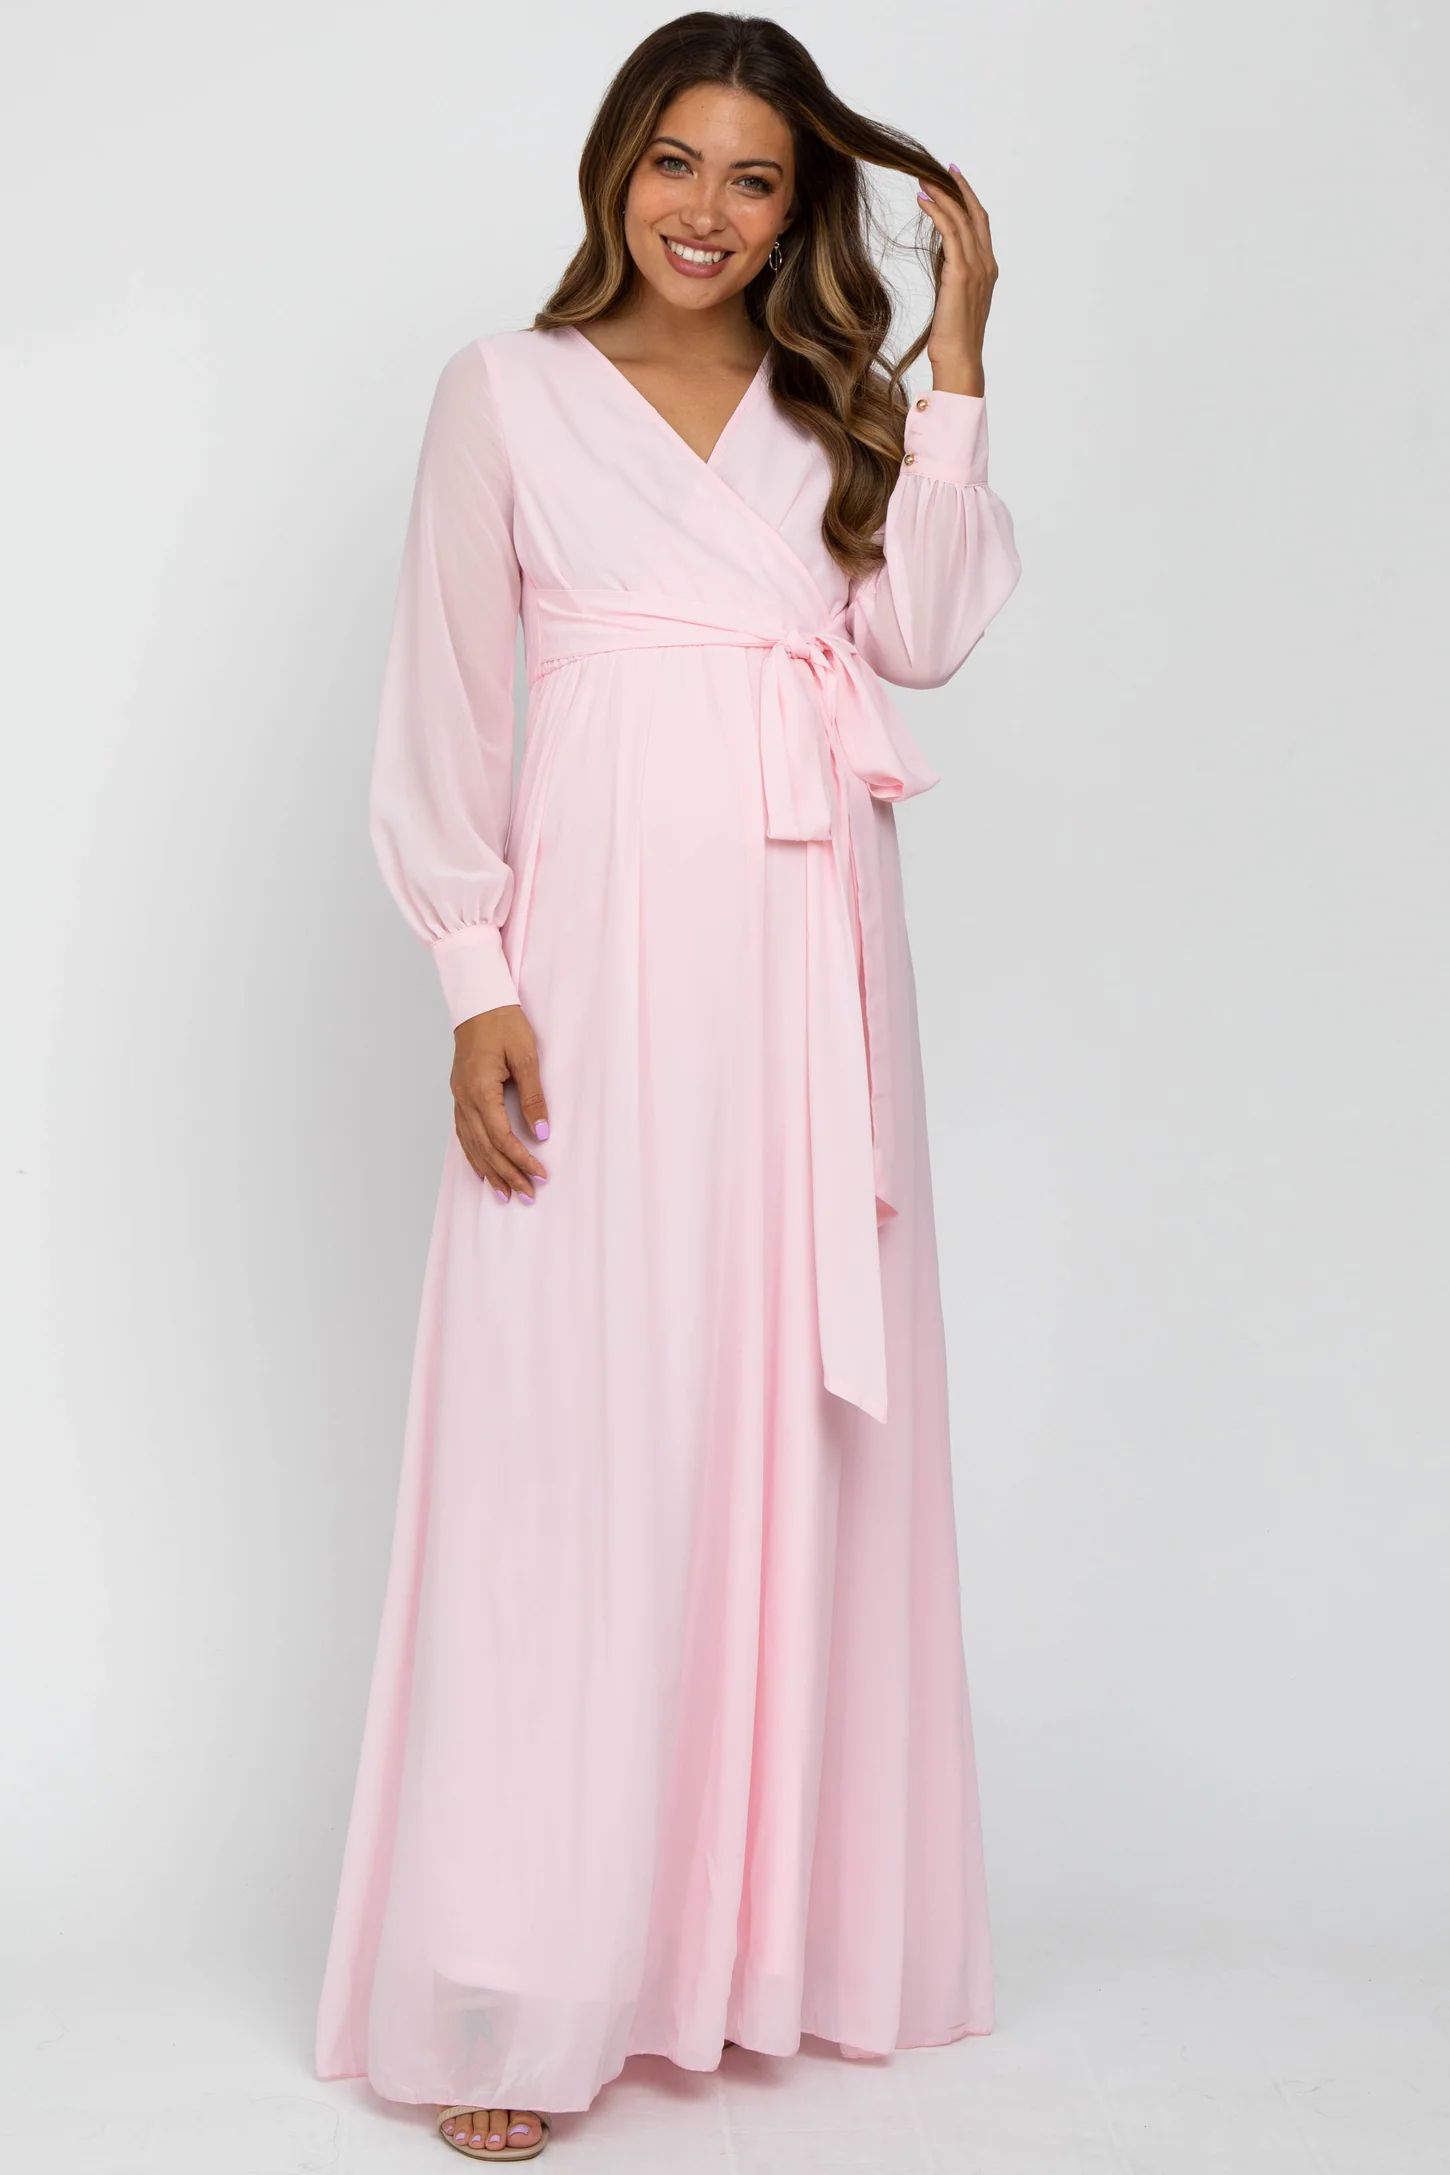 Light Pink Chiffon Long Sleeve Maternity Maxi Dress | PinkBlush Maternity